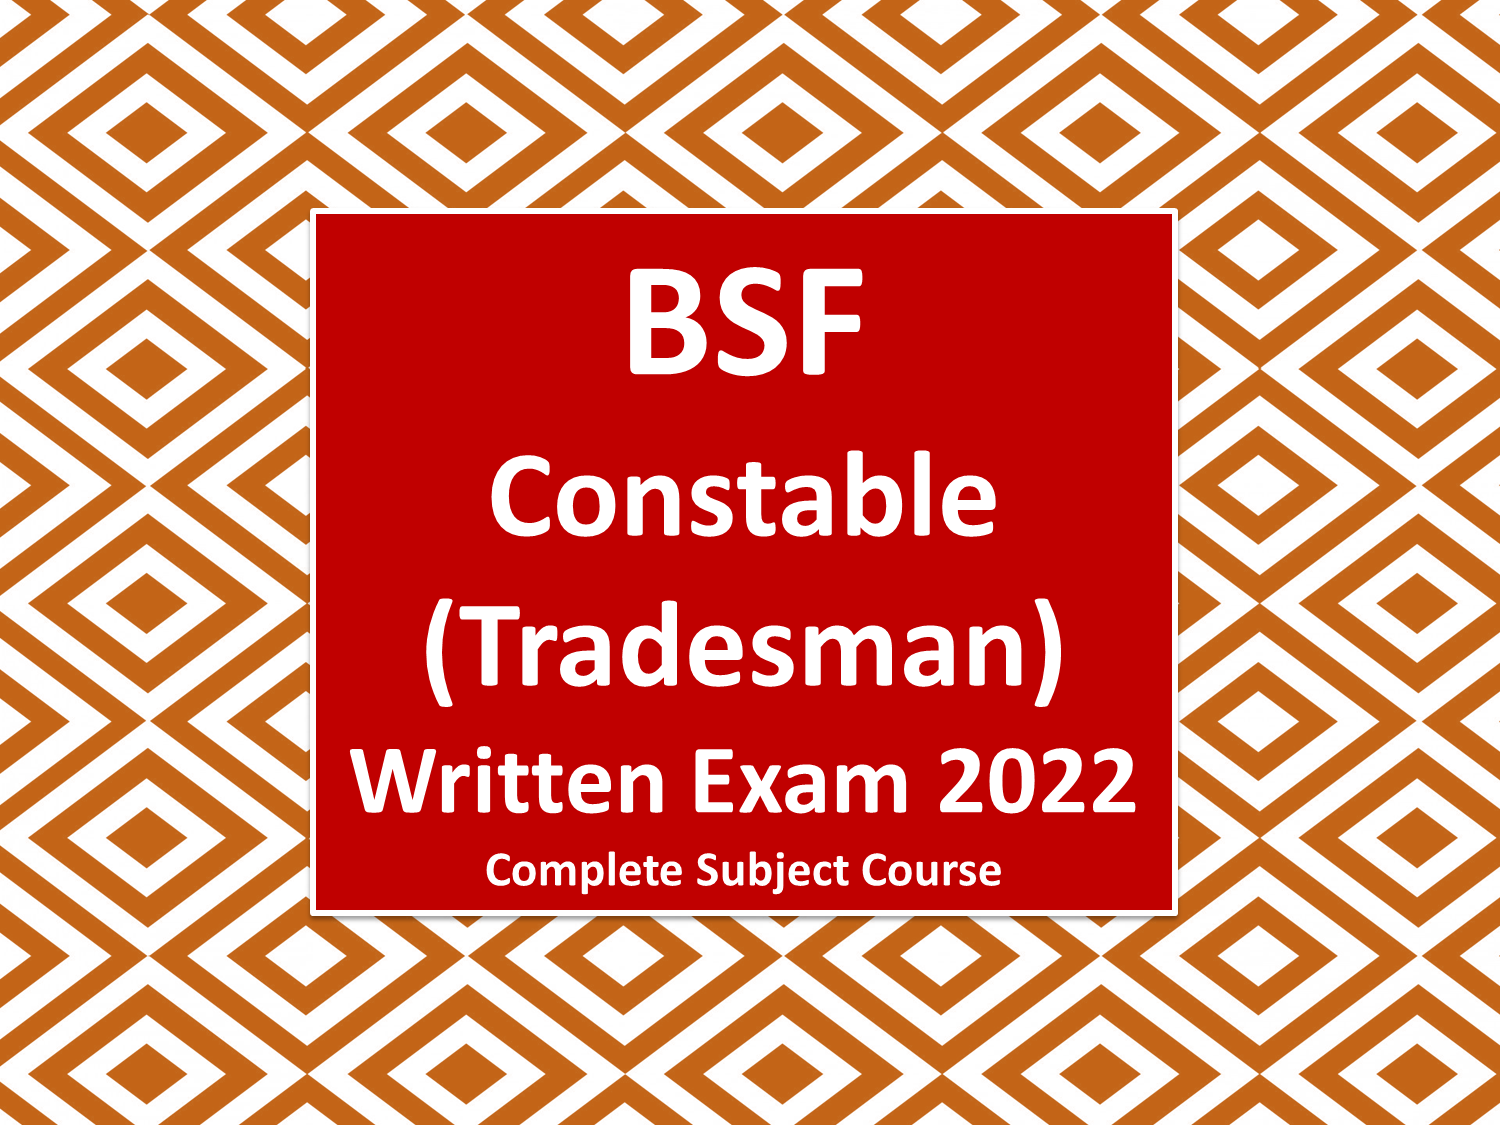 BSF Constable (Tradesman) Written Exam 2022